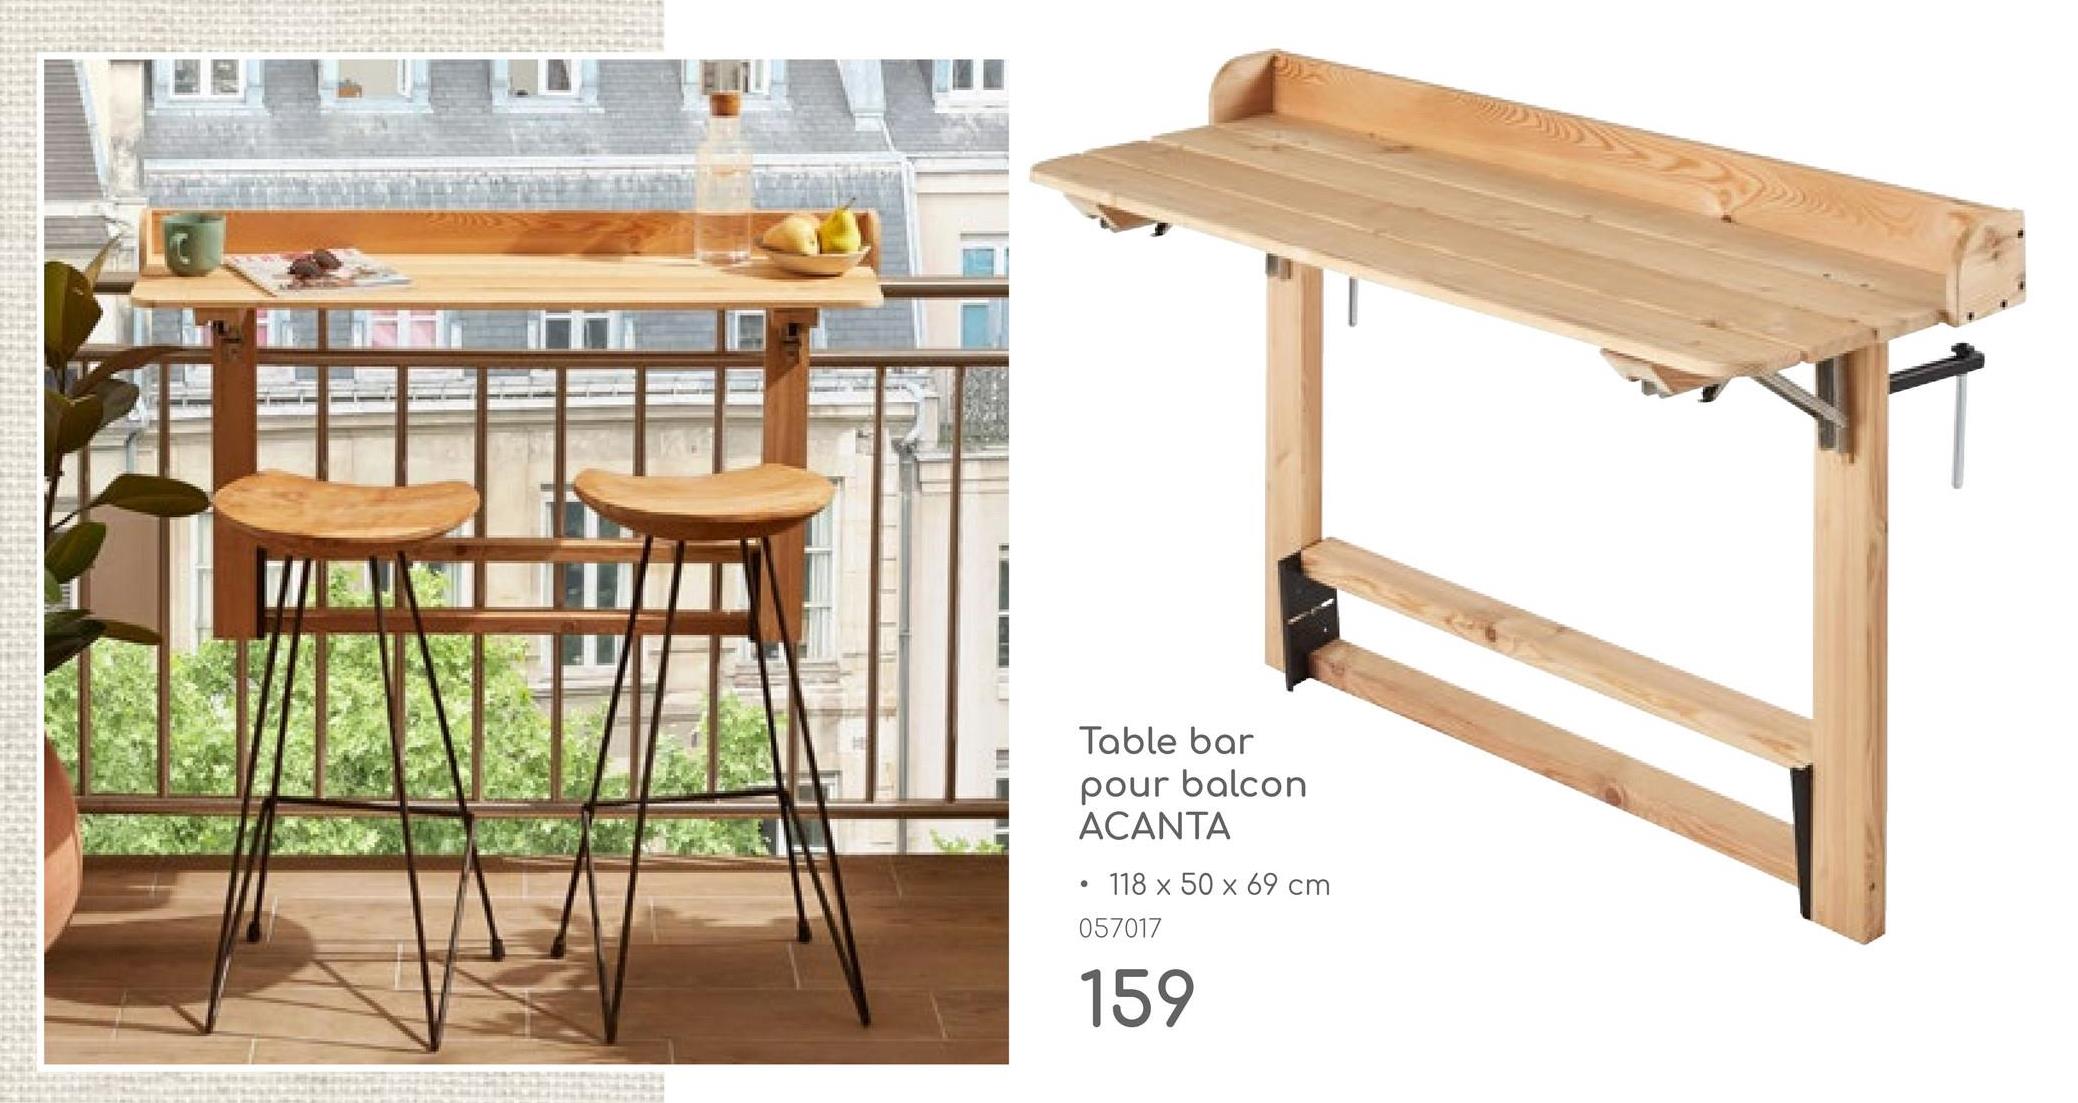 •
Table bar
pour balcon
ACANTA
118 x 50 x 69 cm
057017
159